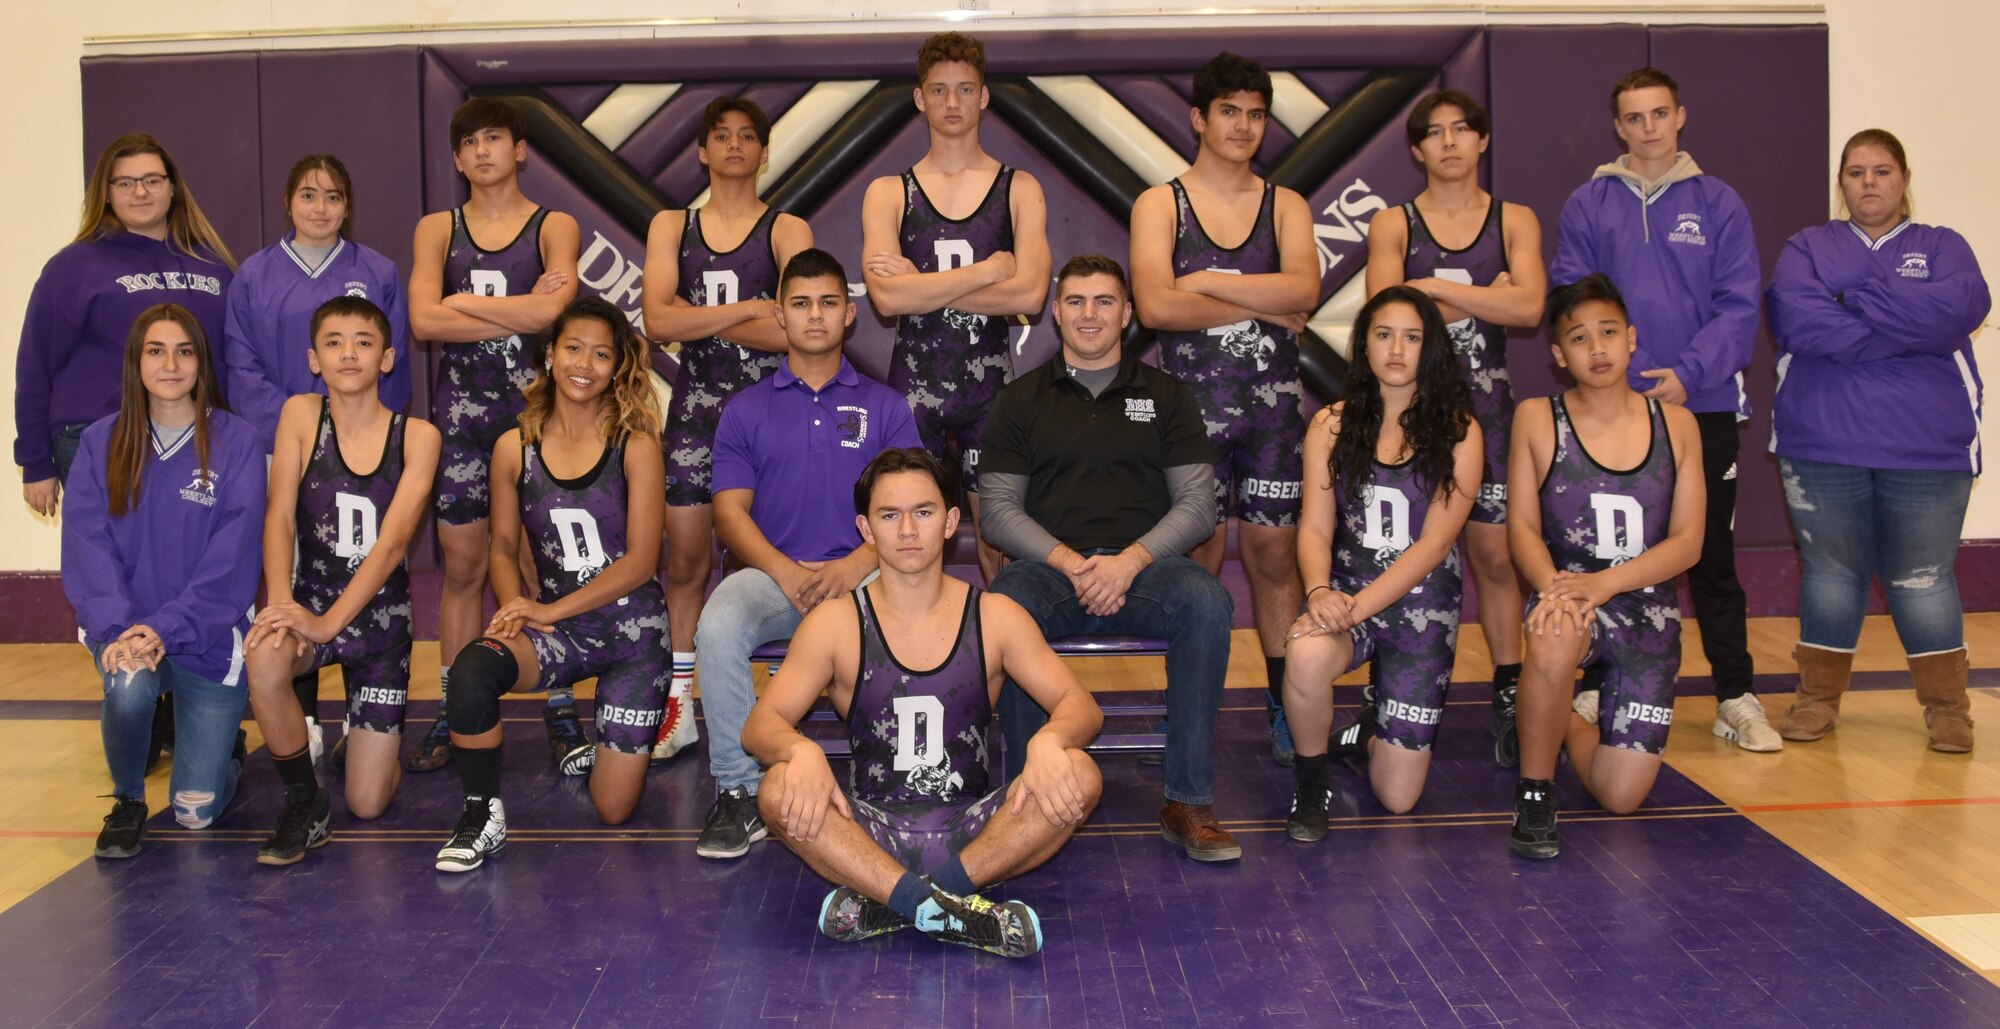 The Desert High School wrestling team. (Courtesy photo)